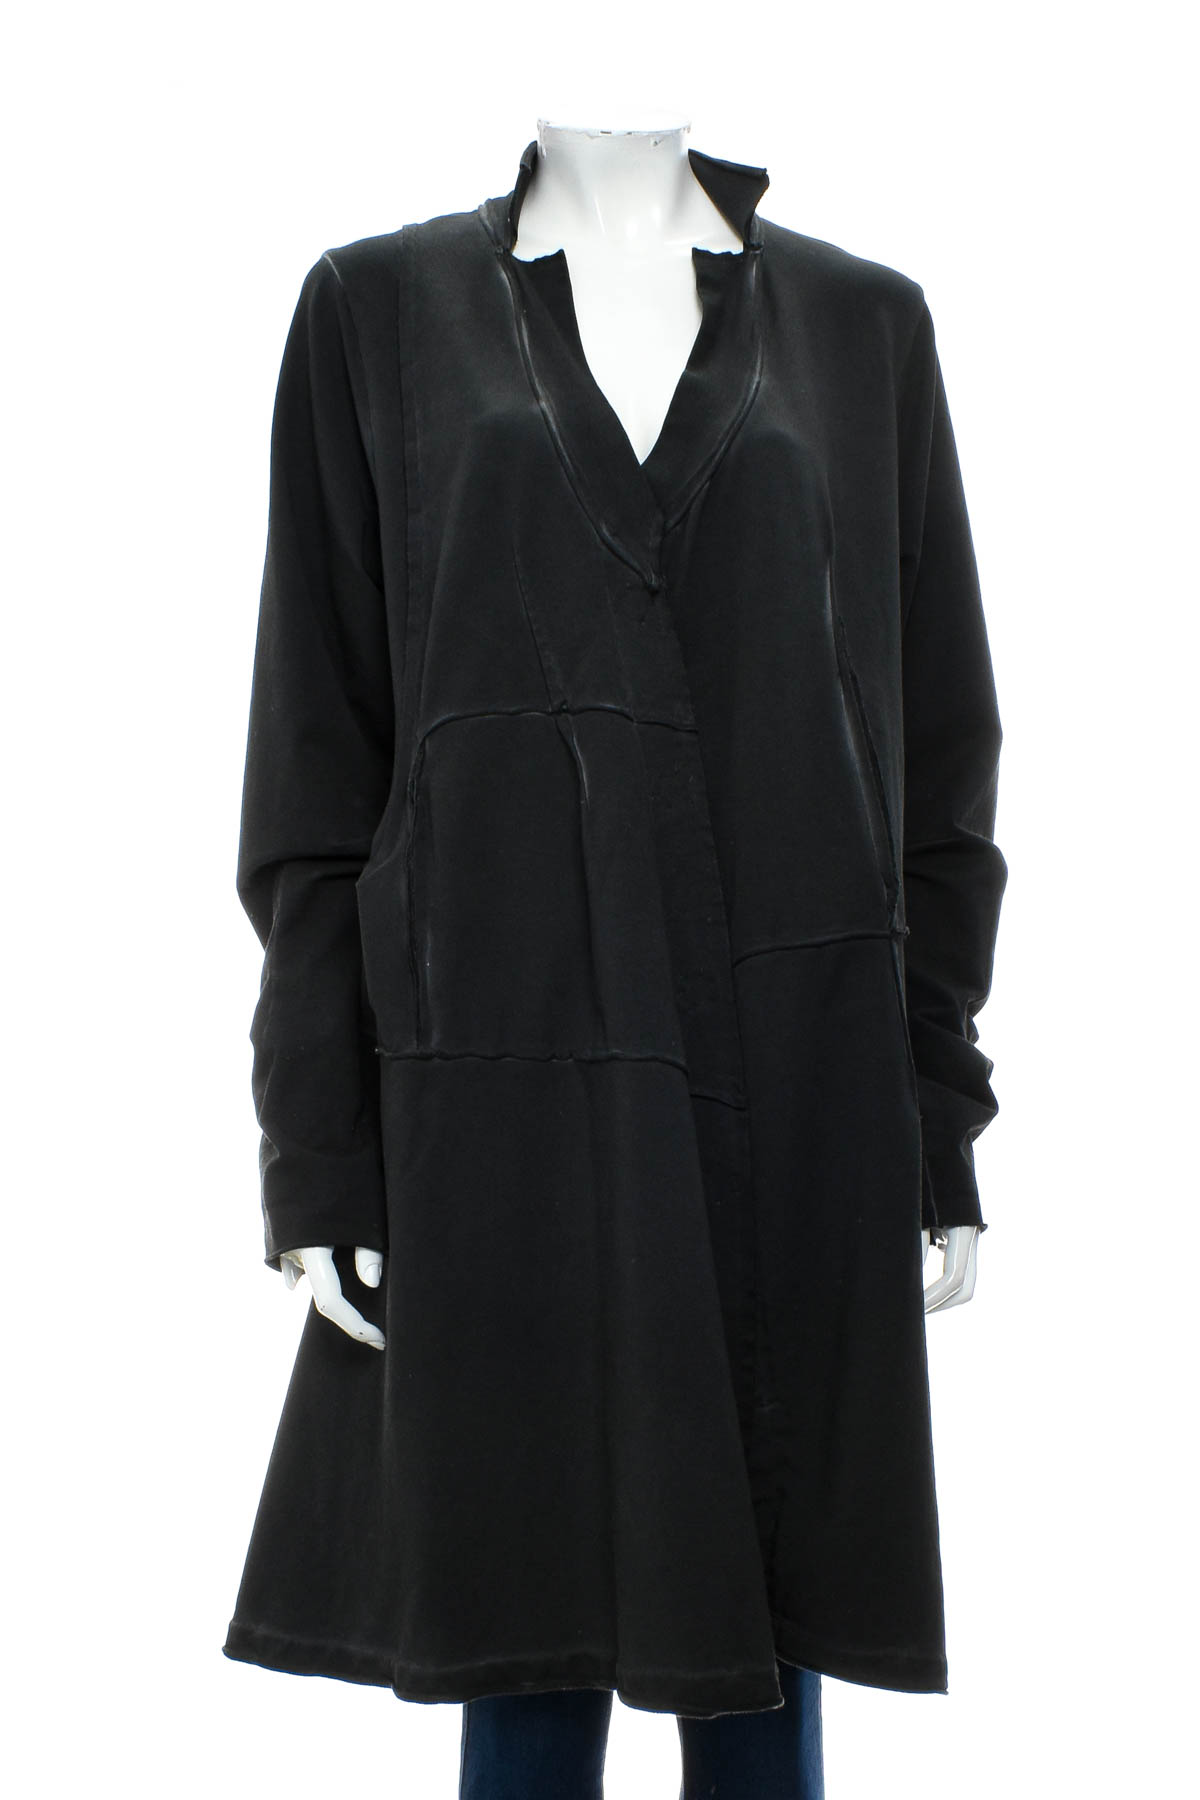 Γυναικείο παλτό - Barbara Speer - 0